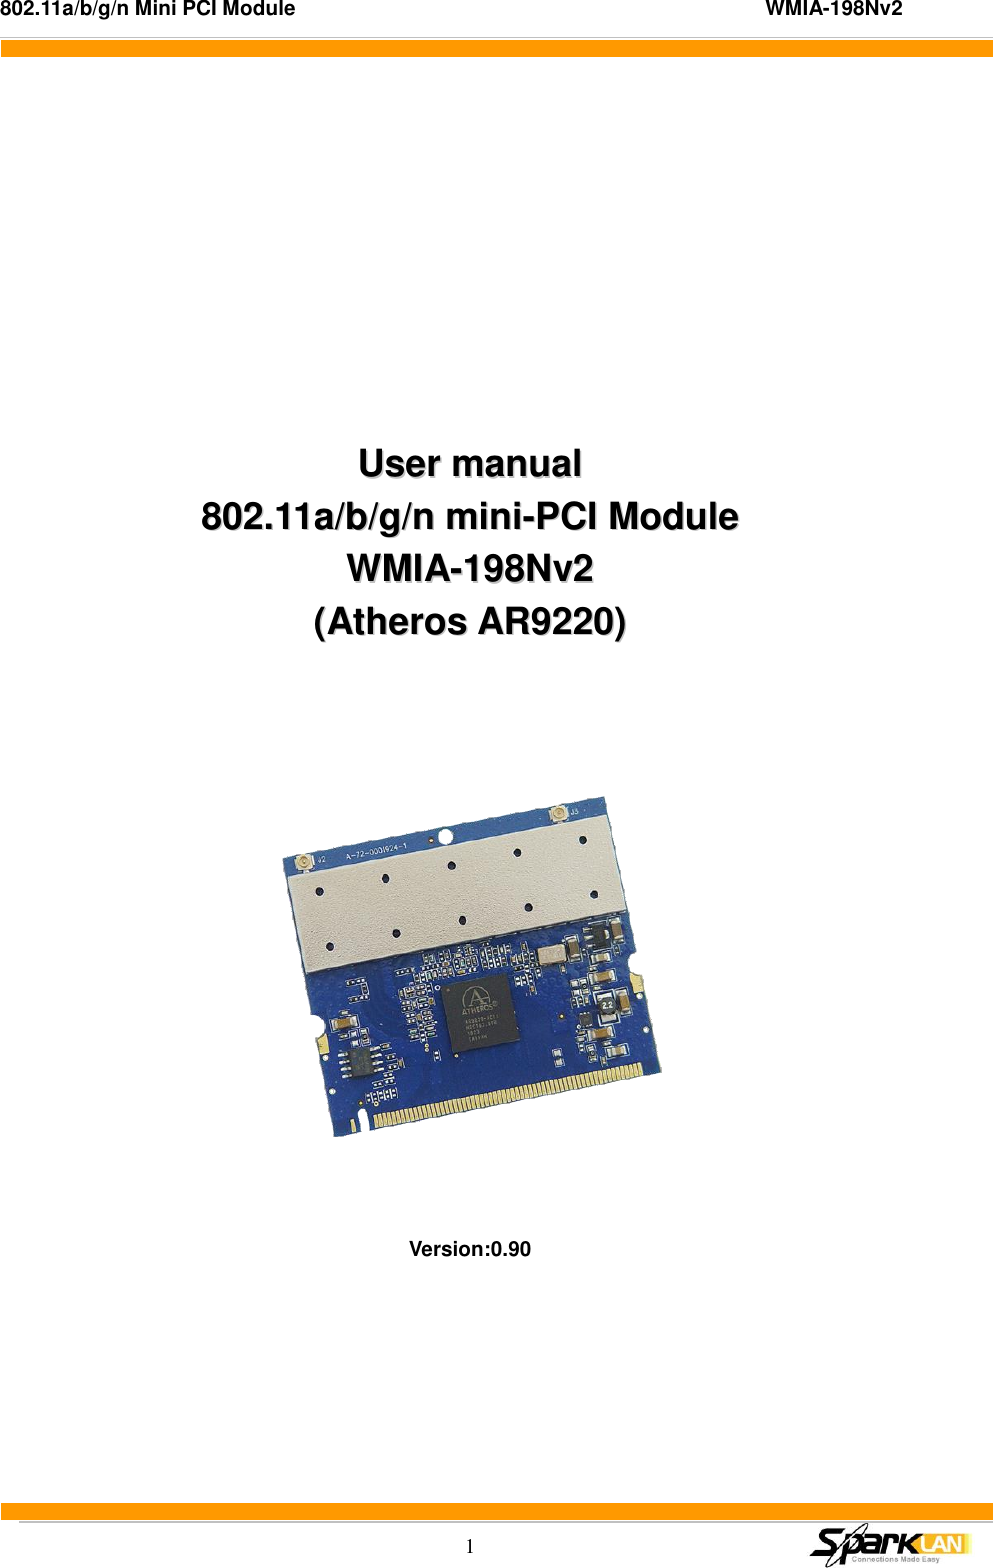 802.11a/b/g/n Mini PCI Module                                                                                          WMIA-198Nv2  1      UUsseerr  mmaannuuaall  880022..1111aa//bb//gg//nn  mmiinnii--PPCCII  MMoodduullee  WWMMIIAA--119988NNvv22  ((AAtthheerrooss  AARR99222200))       Version:0.90  